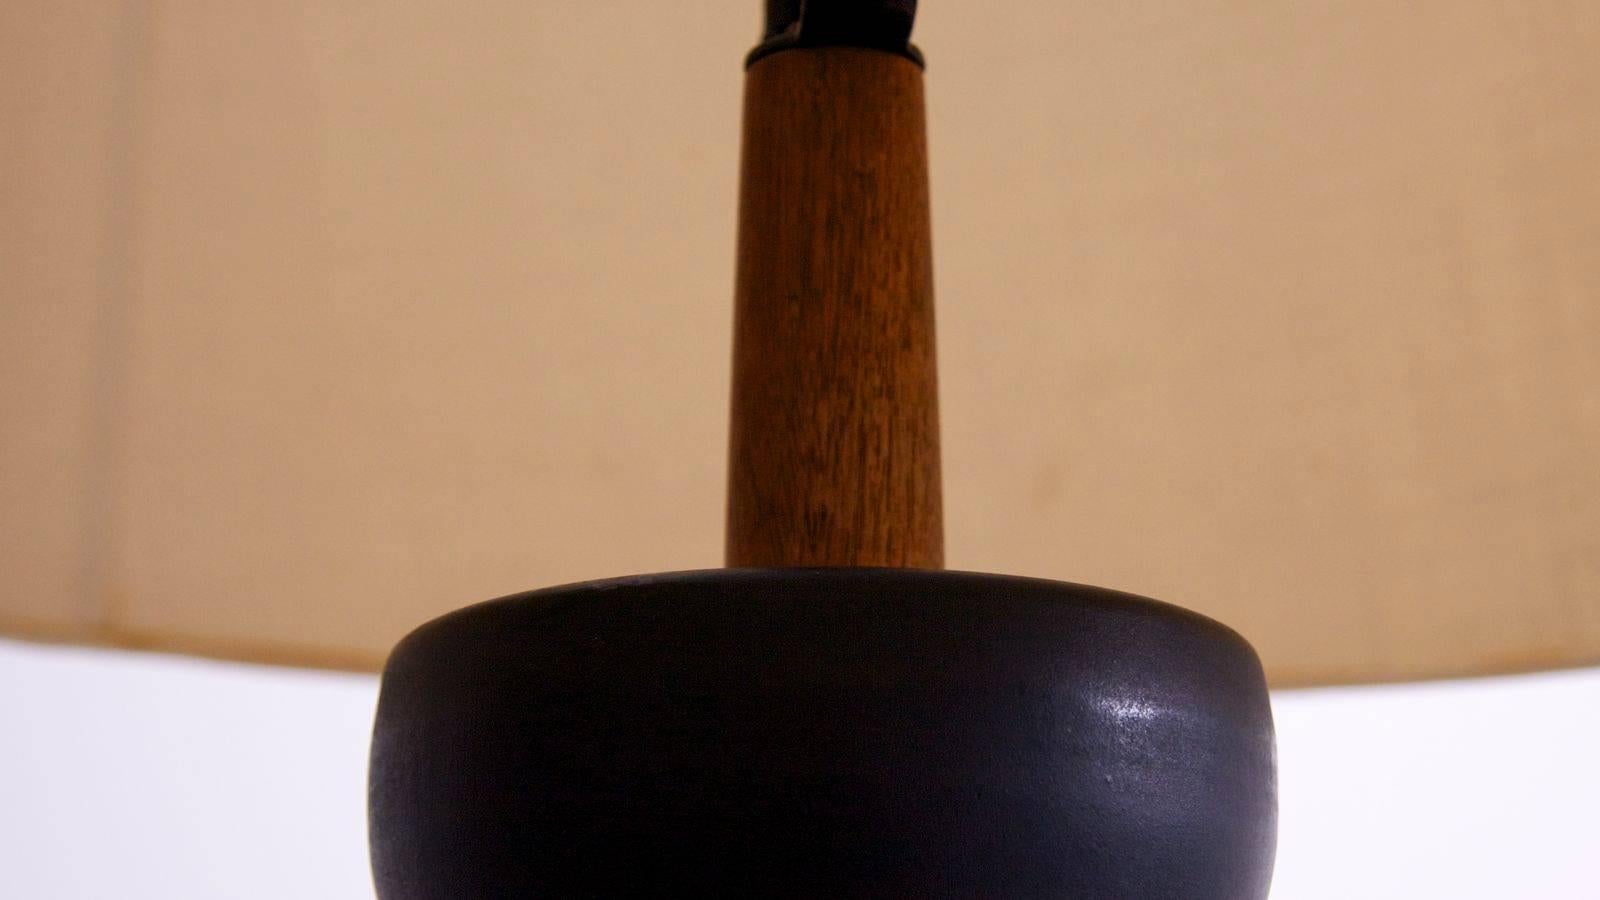 American Large Gordon Martz Table Lamp Model 152 for Marshall Studios